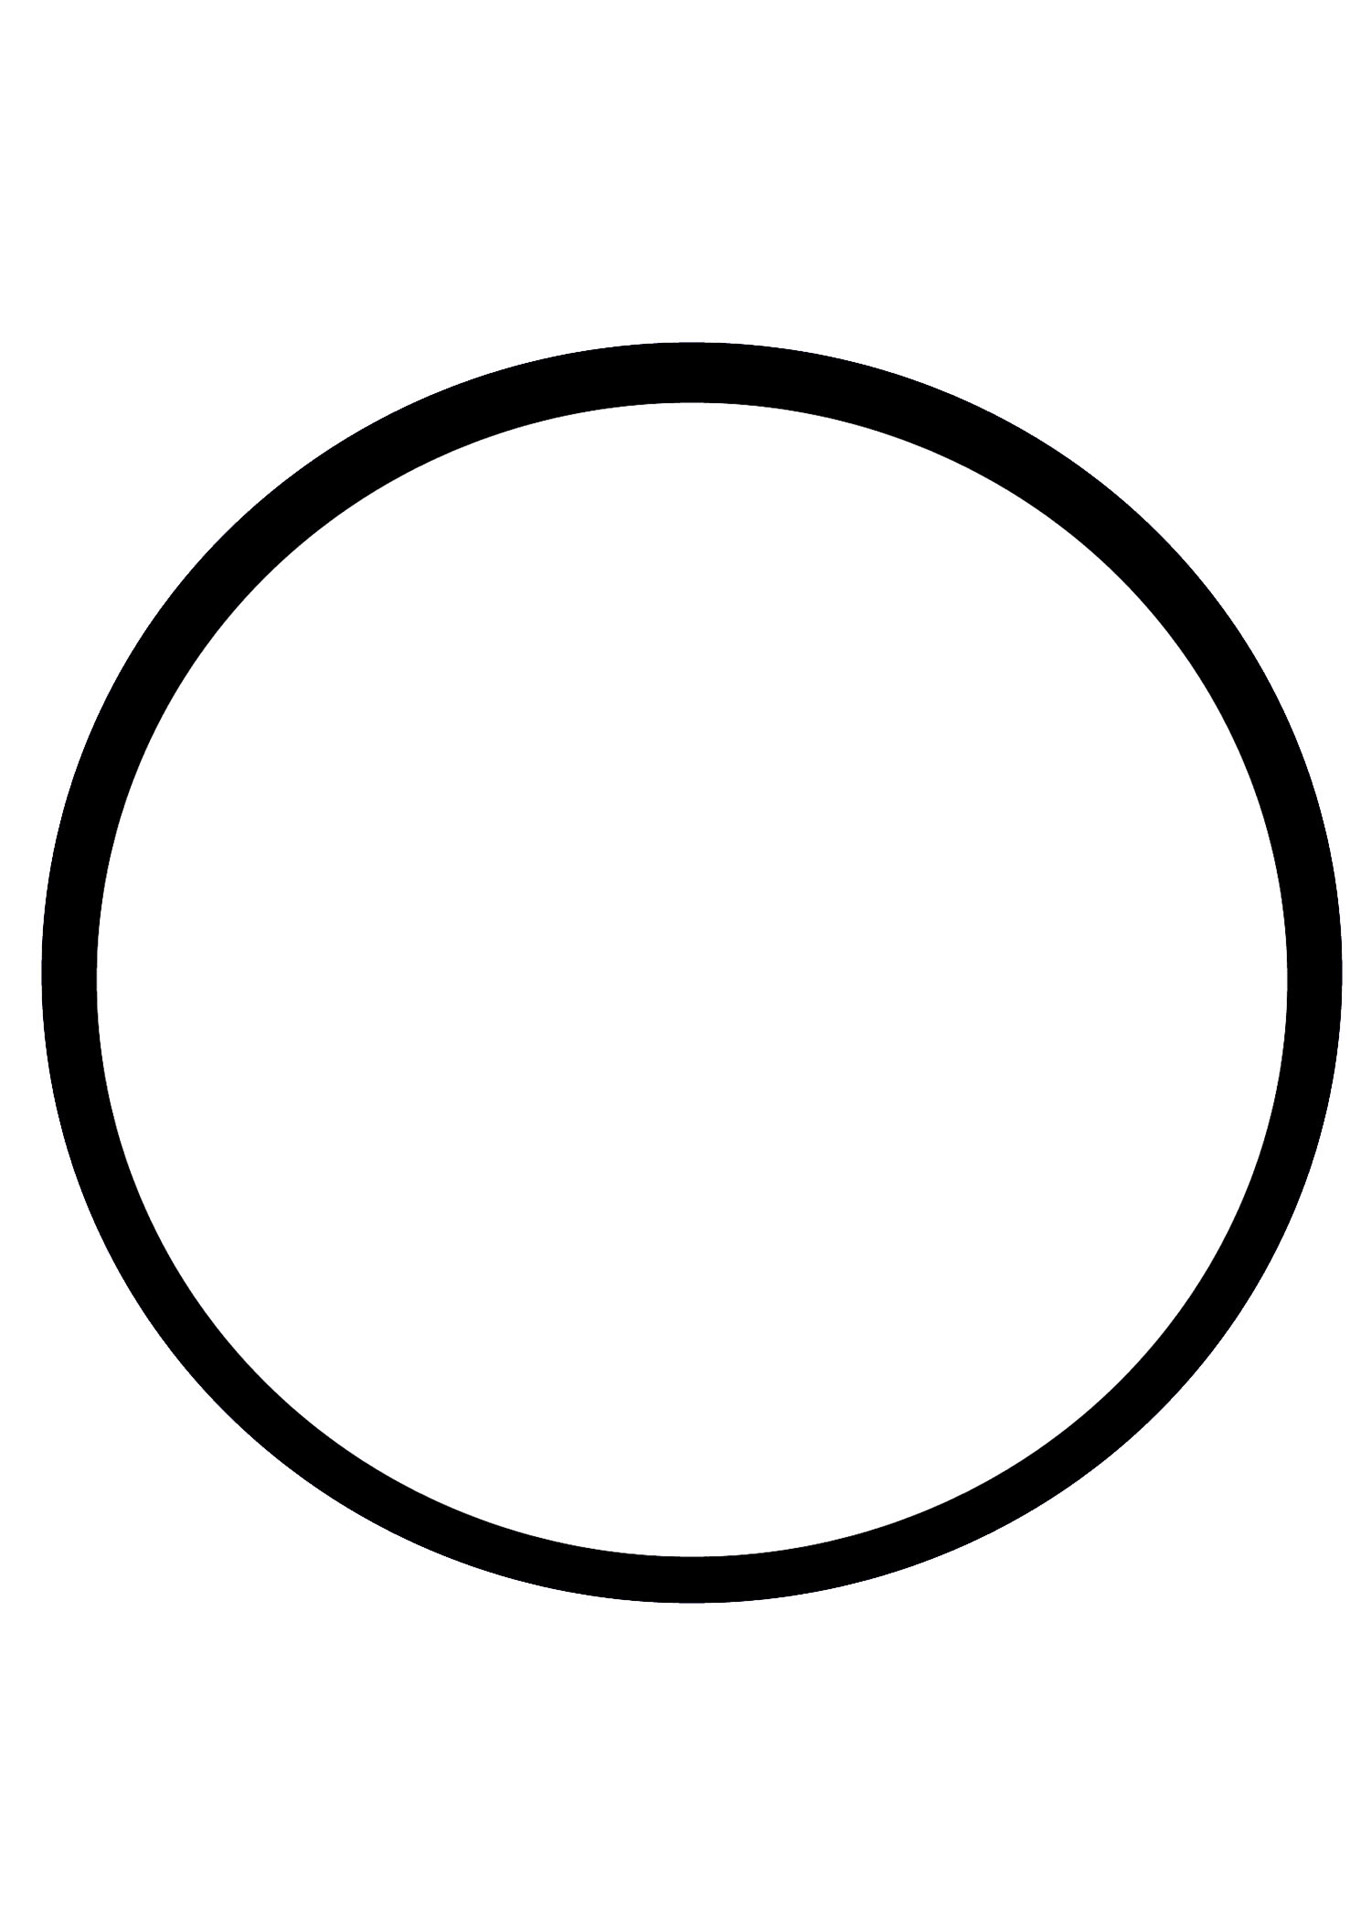 basic circle outline free photo